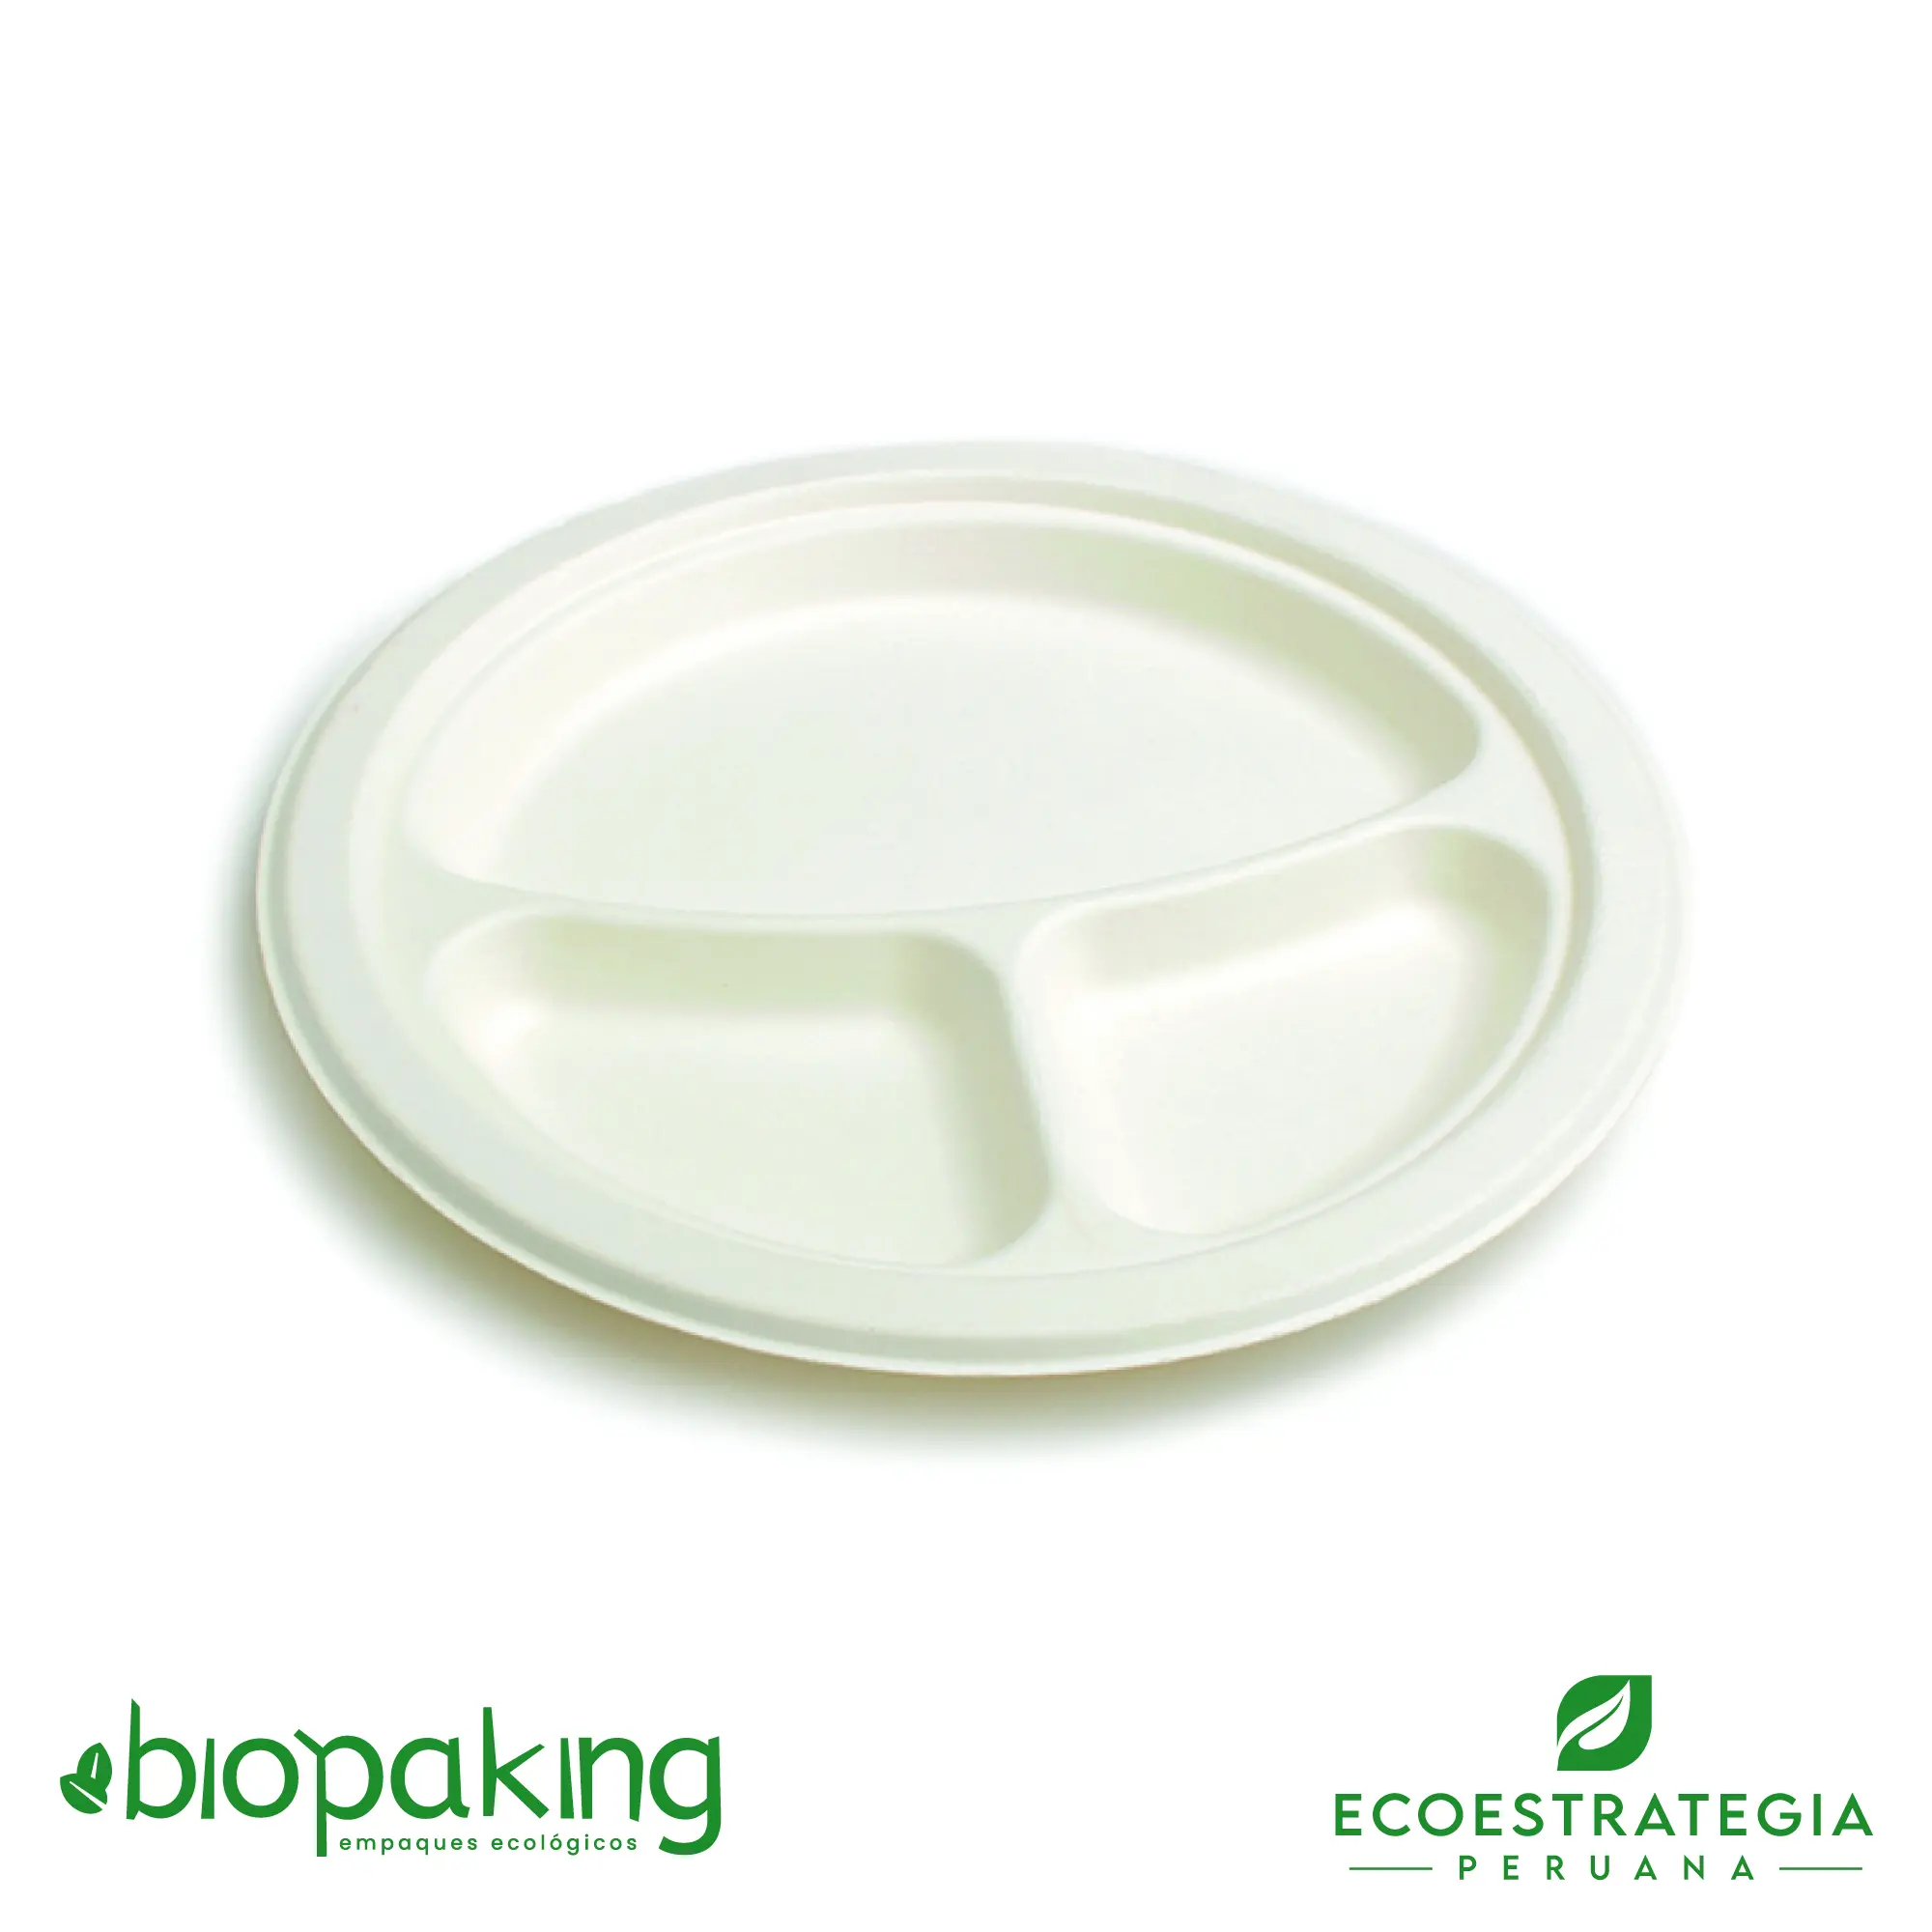 Platos biodegradables EP-26 D/V conocido también como platos biodegradables, platos ecológicos, platos descartables, platos desechables, platos compostables, platos para postres, platos de caña de azúcar, platos de fondo, platos hechos en Perú, platos caseros, platos pequeños o platos de fibra de caña de azúcar